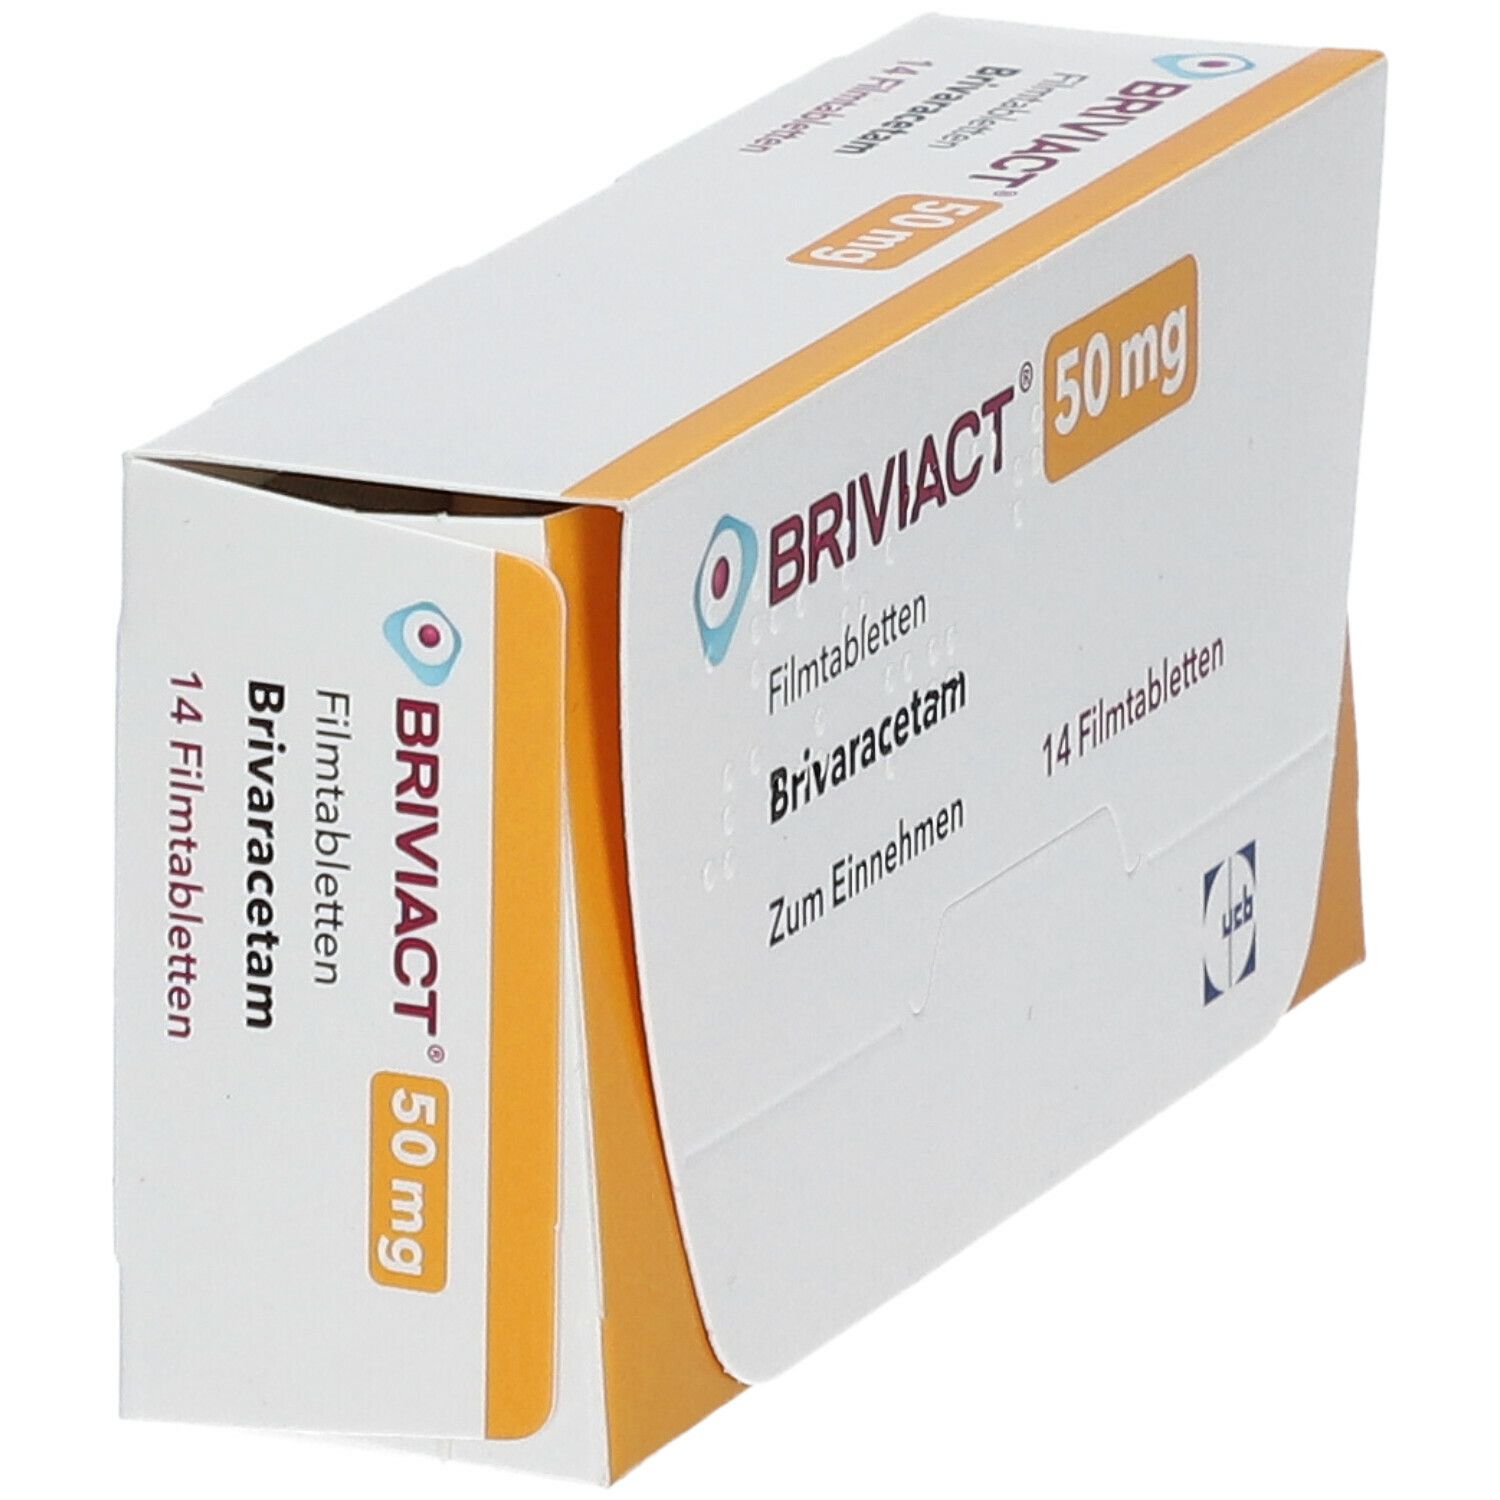 BRIVIACT® 50 mg